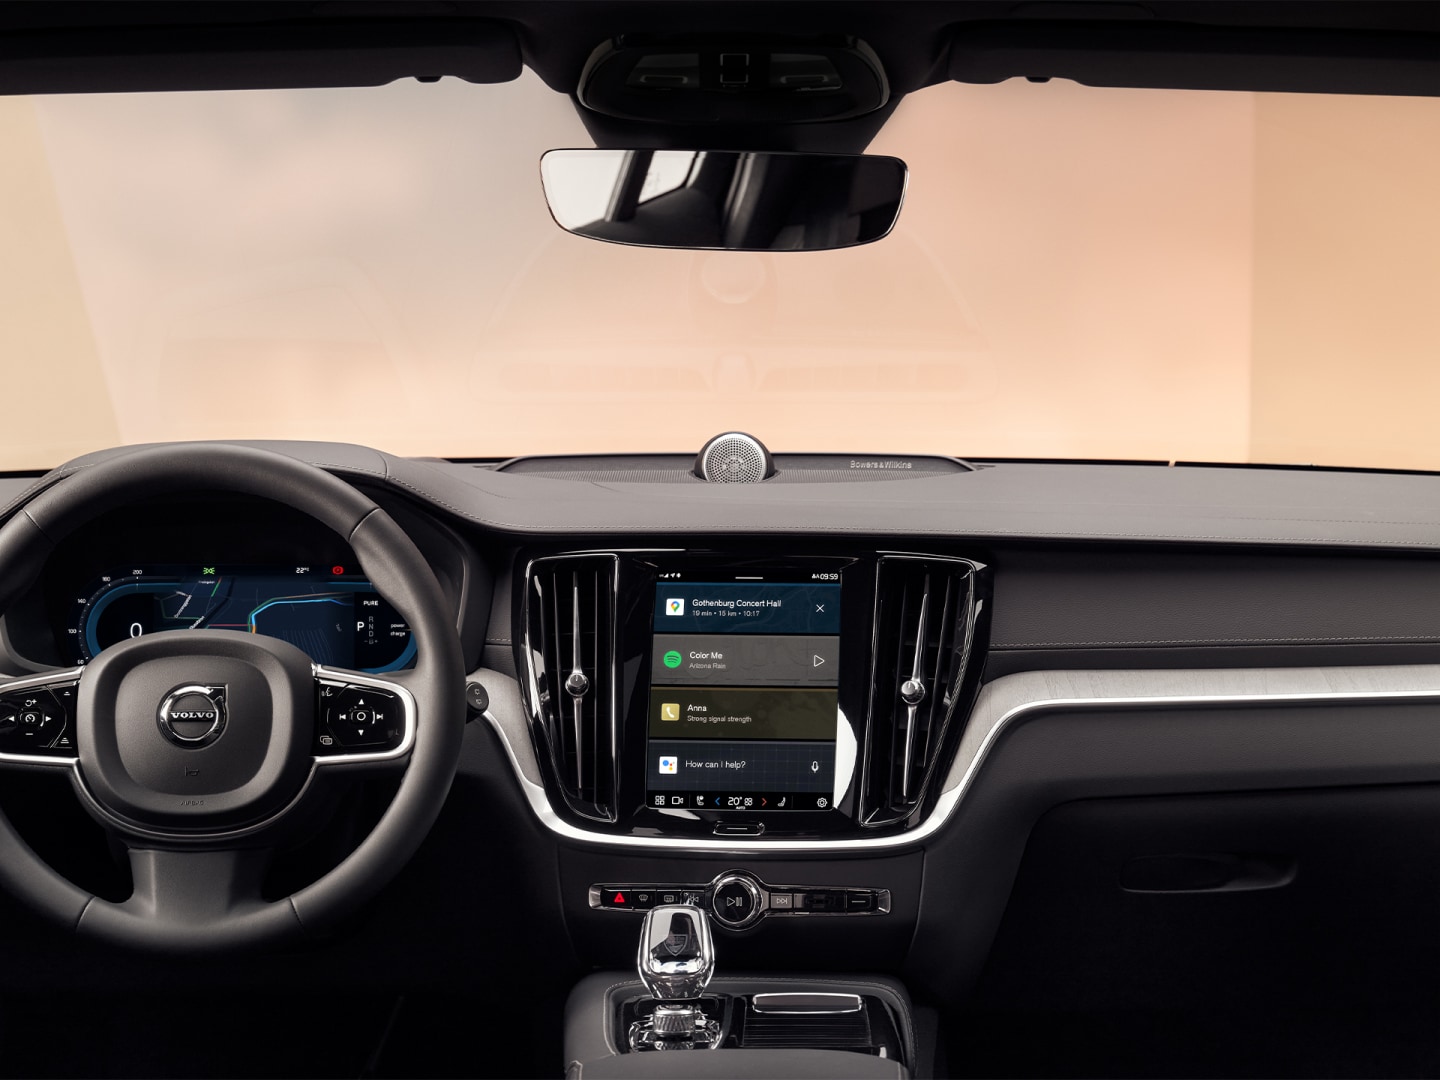 Lenkrad, Instrumententafel und Infotainment-Touchscreen des Volvo V60 Plug-in Hybrid.